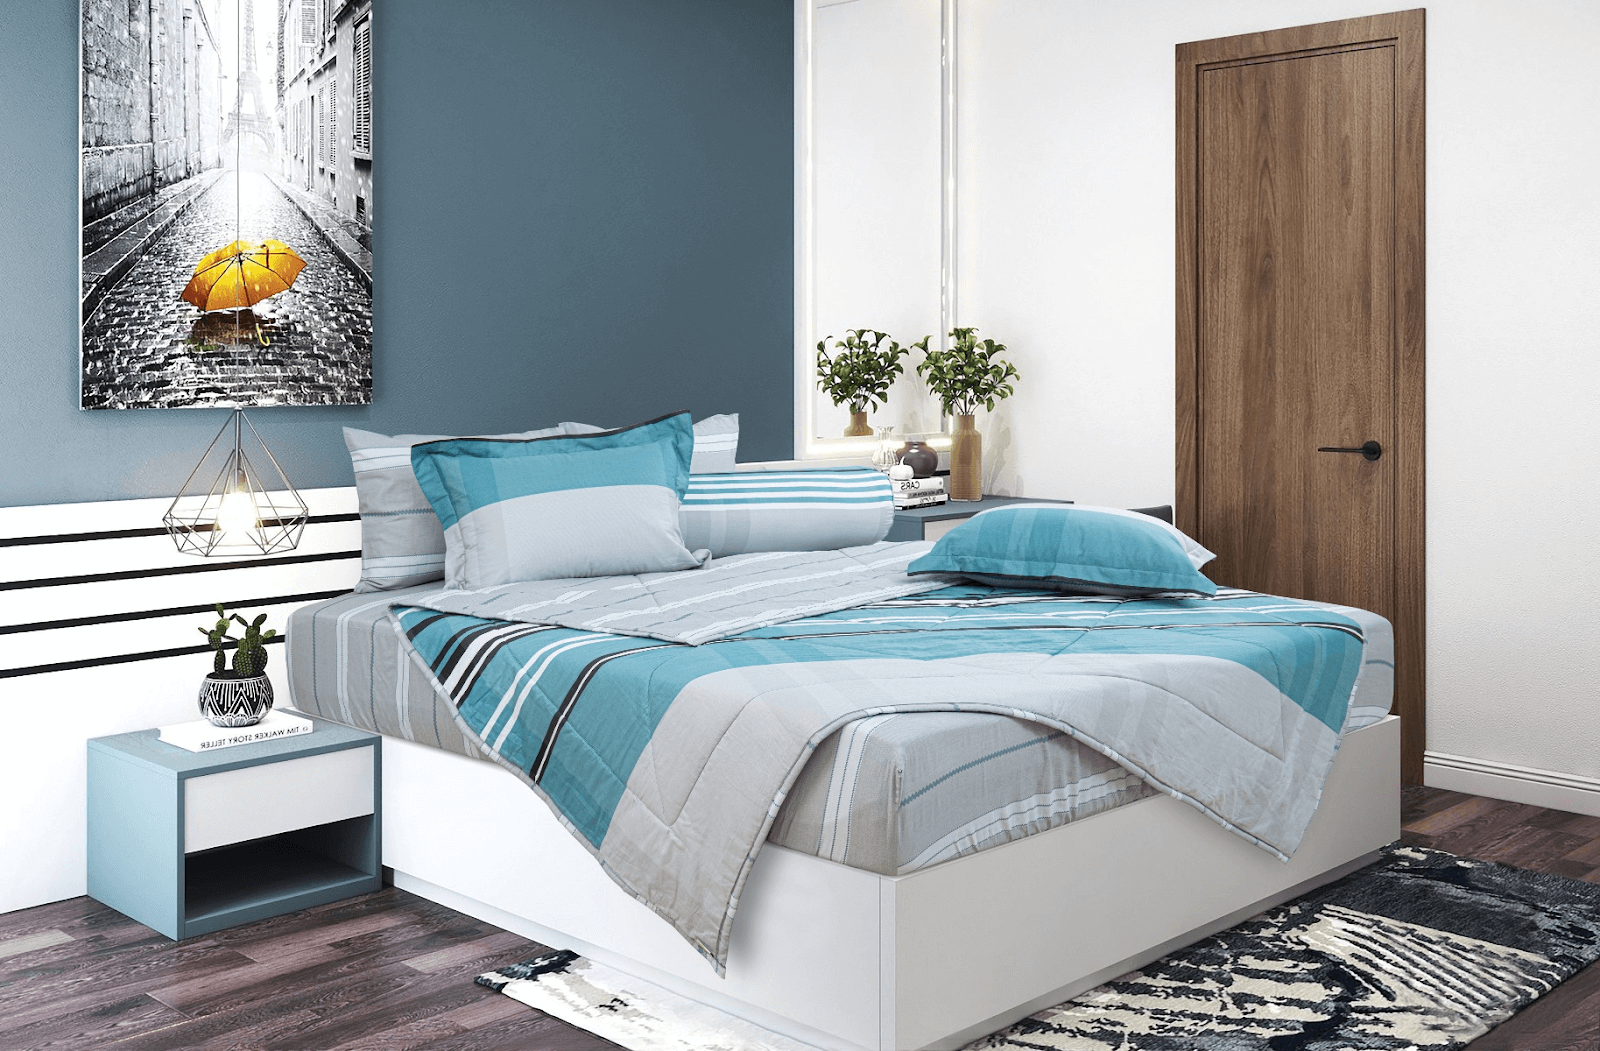 Ga giường cotton Hanvico Merry mang lại vẻ đẹp nhẹ nhàng, thanh thoát cho phòng ngủ của bạn. 